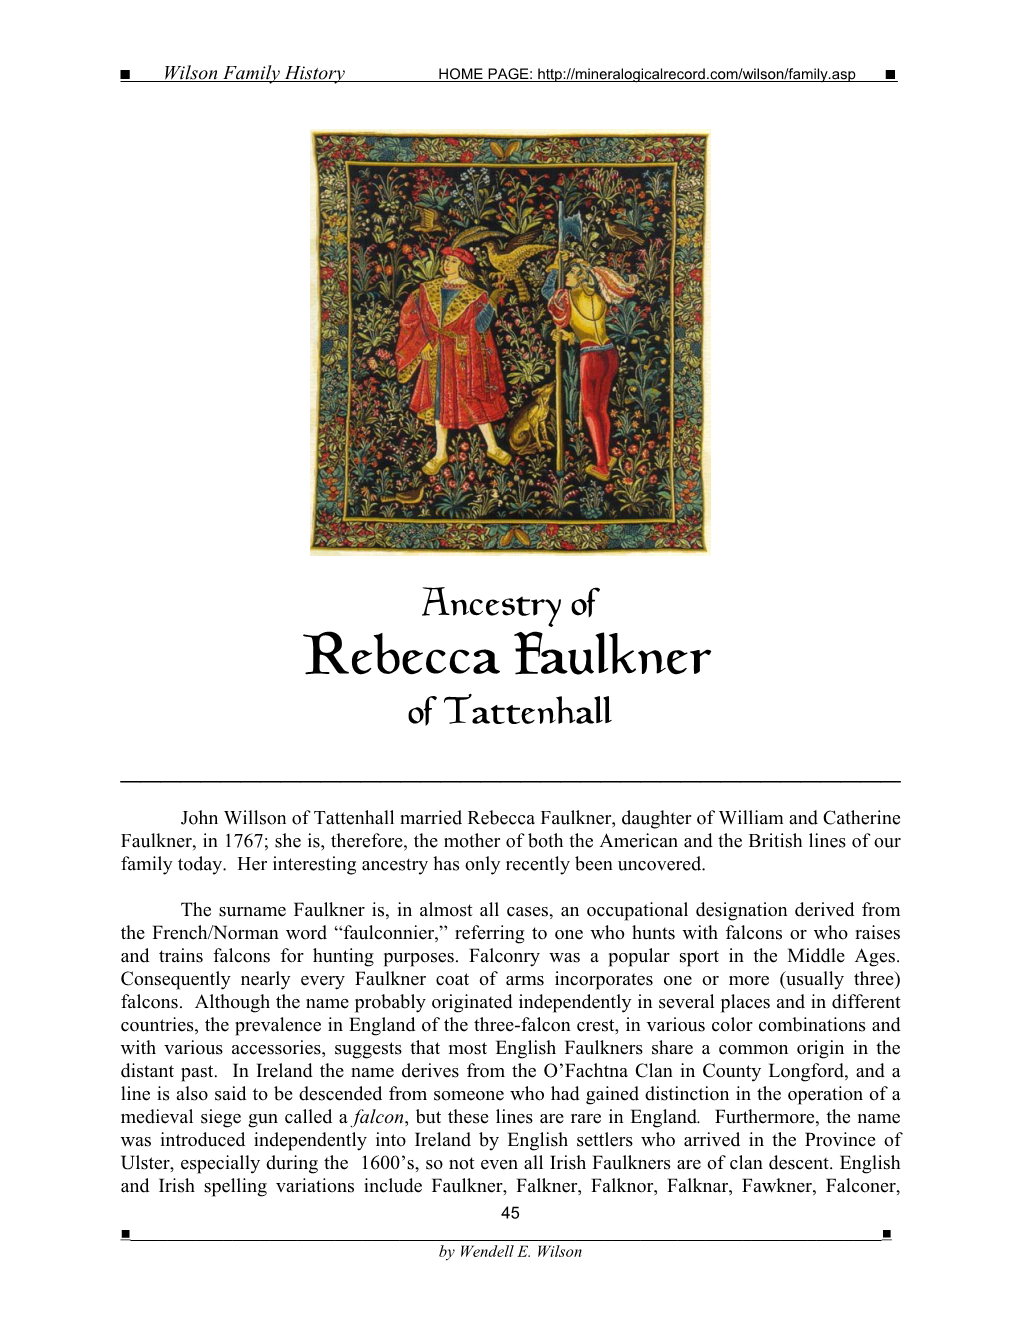 Rebecca Faulkner of Tattenhall ______